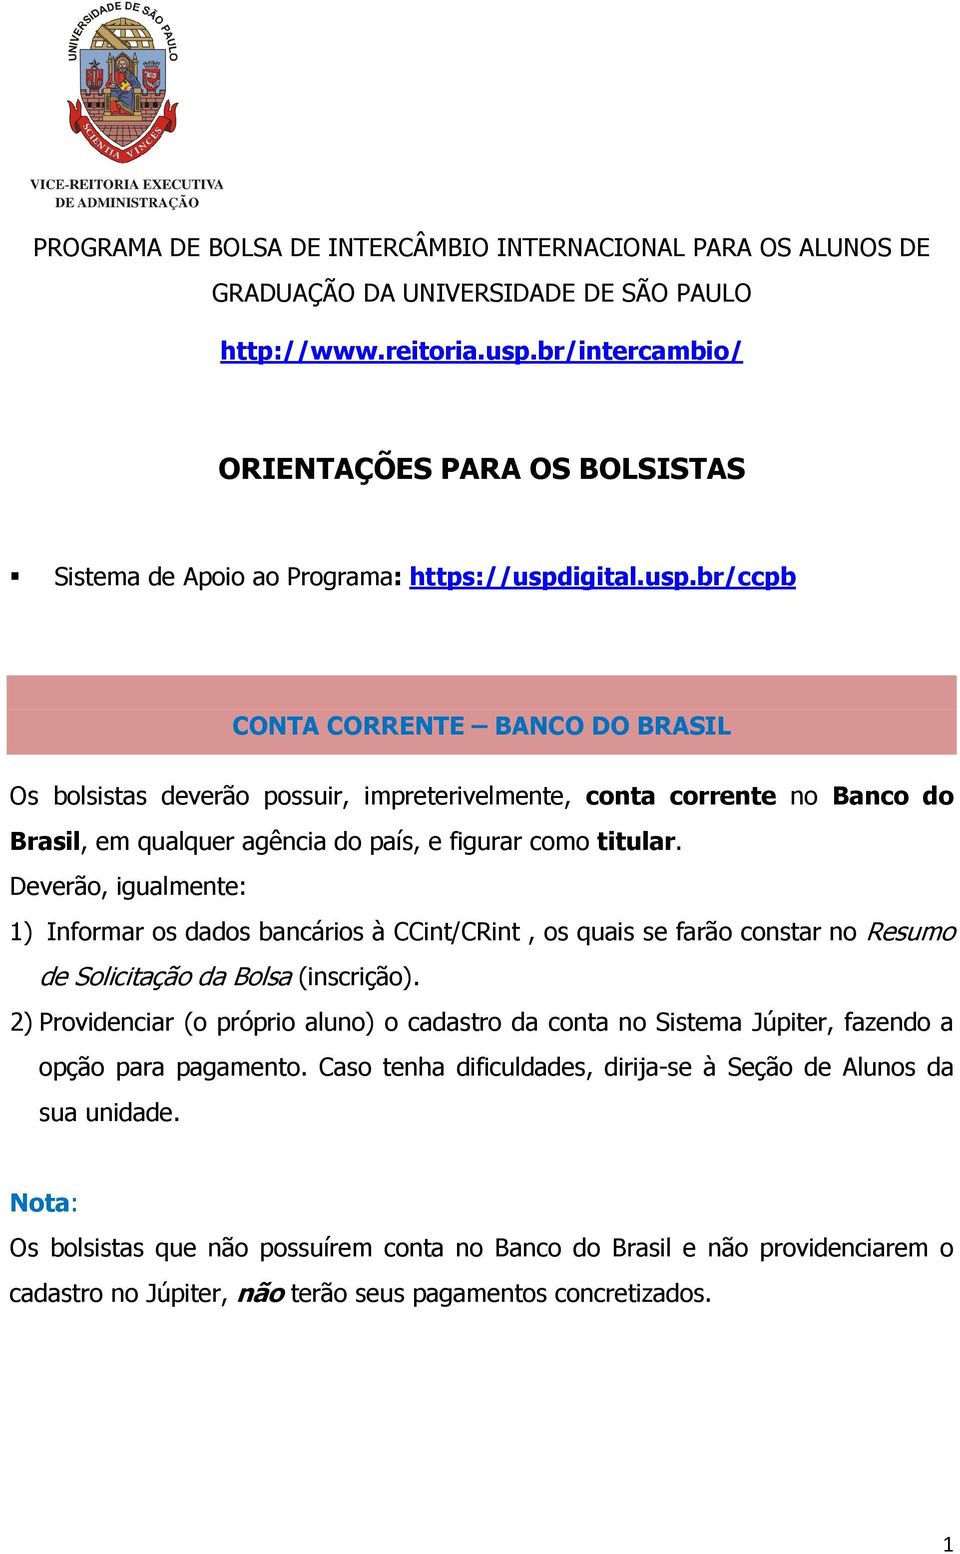 igital.usp.br/ccpb CONTA CORRENTE BANCO DO BRASIL Os bolsistas deverão possuir, impreterivelmente, conta corrente no Banco do Brasil, em qualquer agência do país, e figurar como titular.